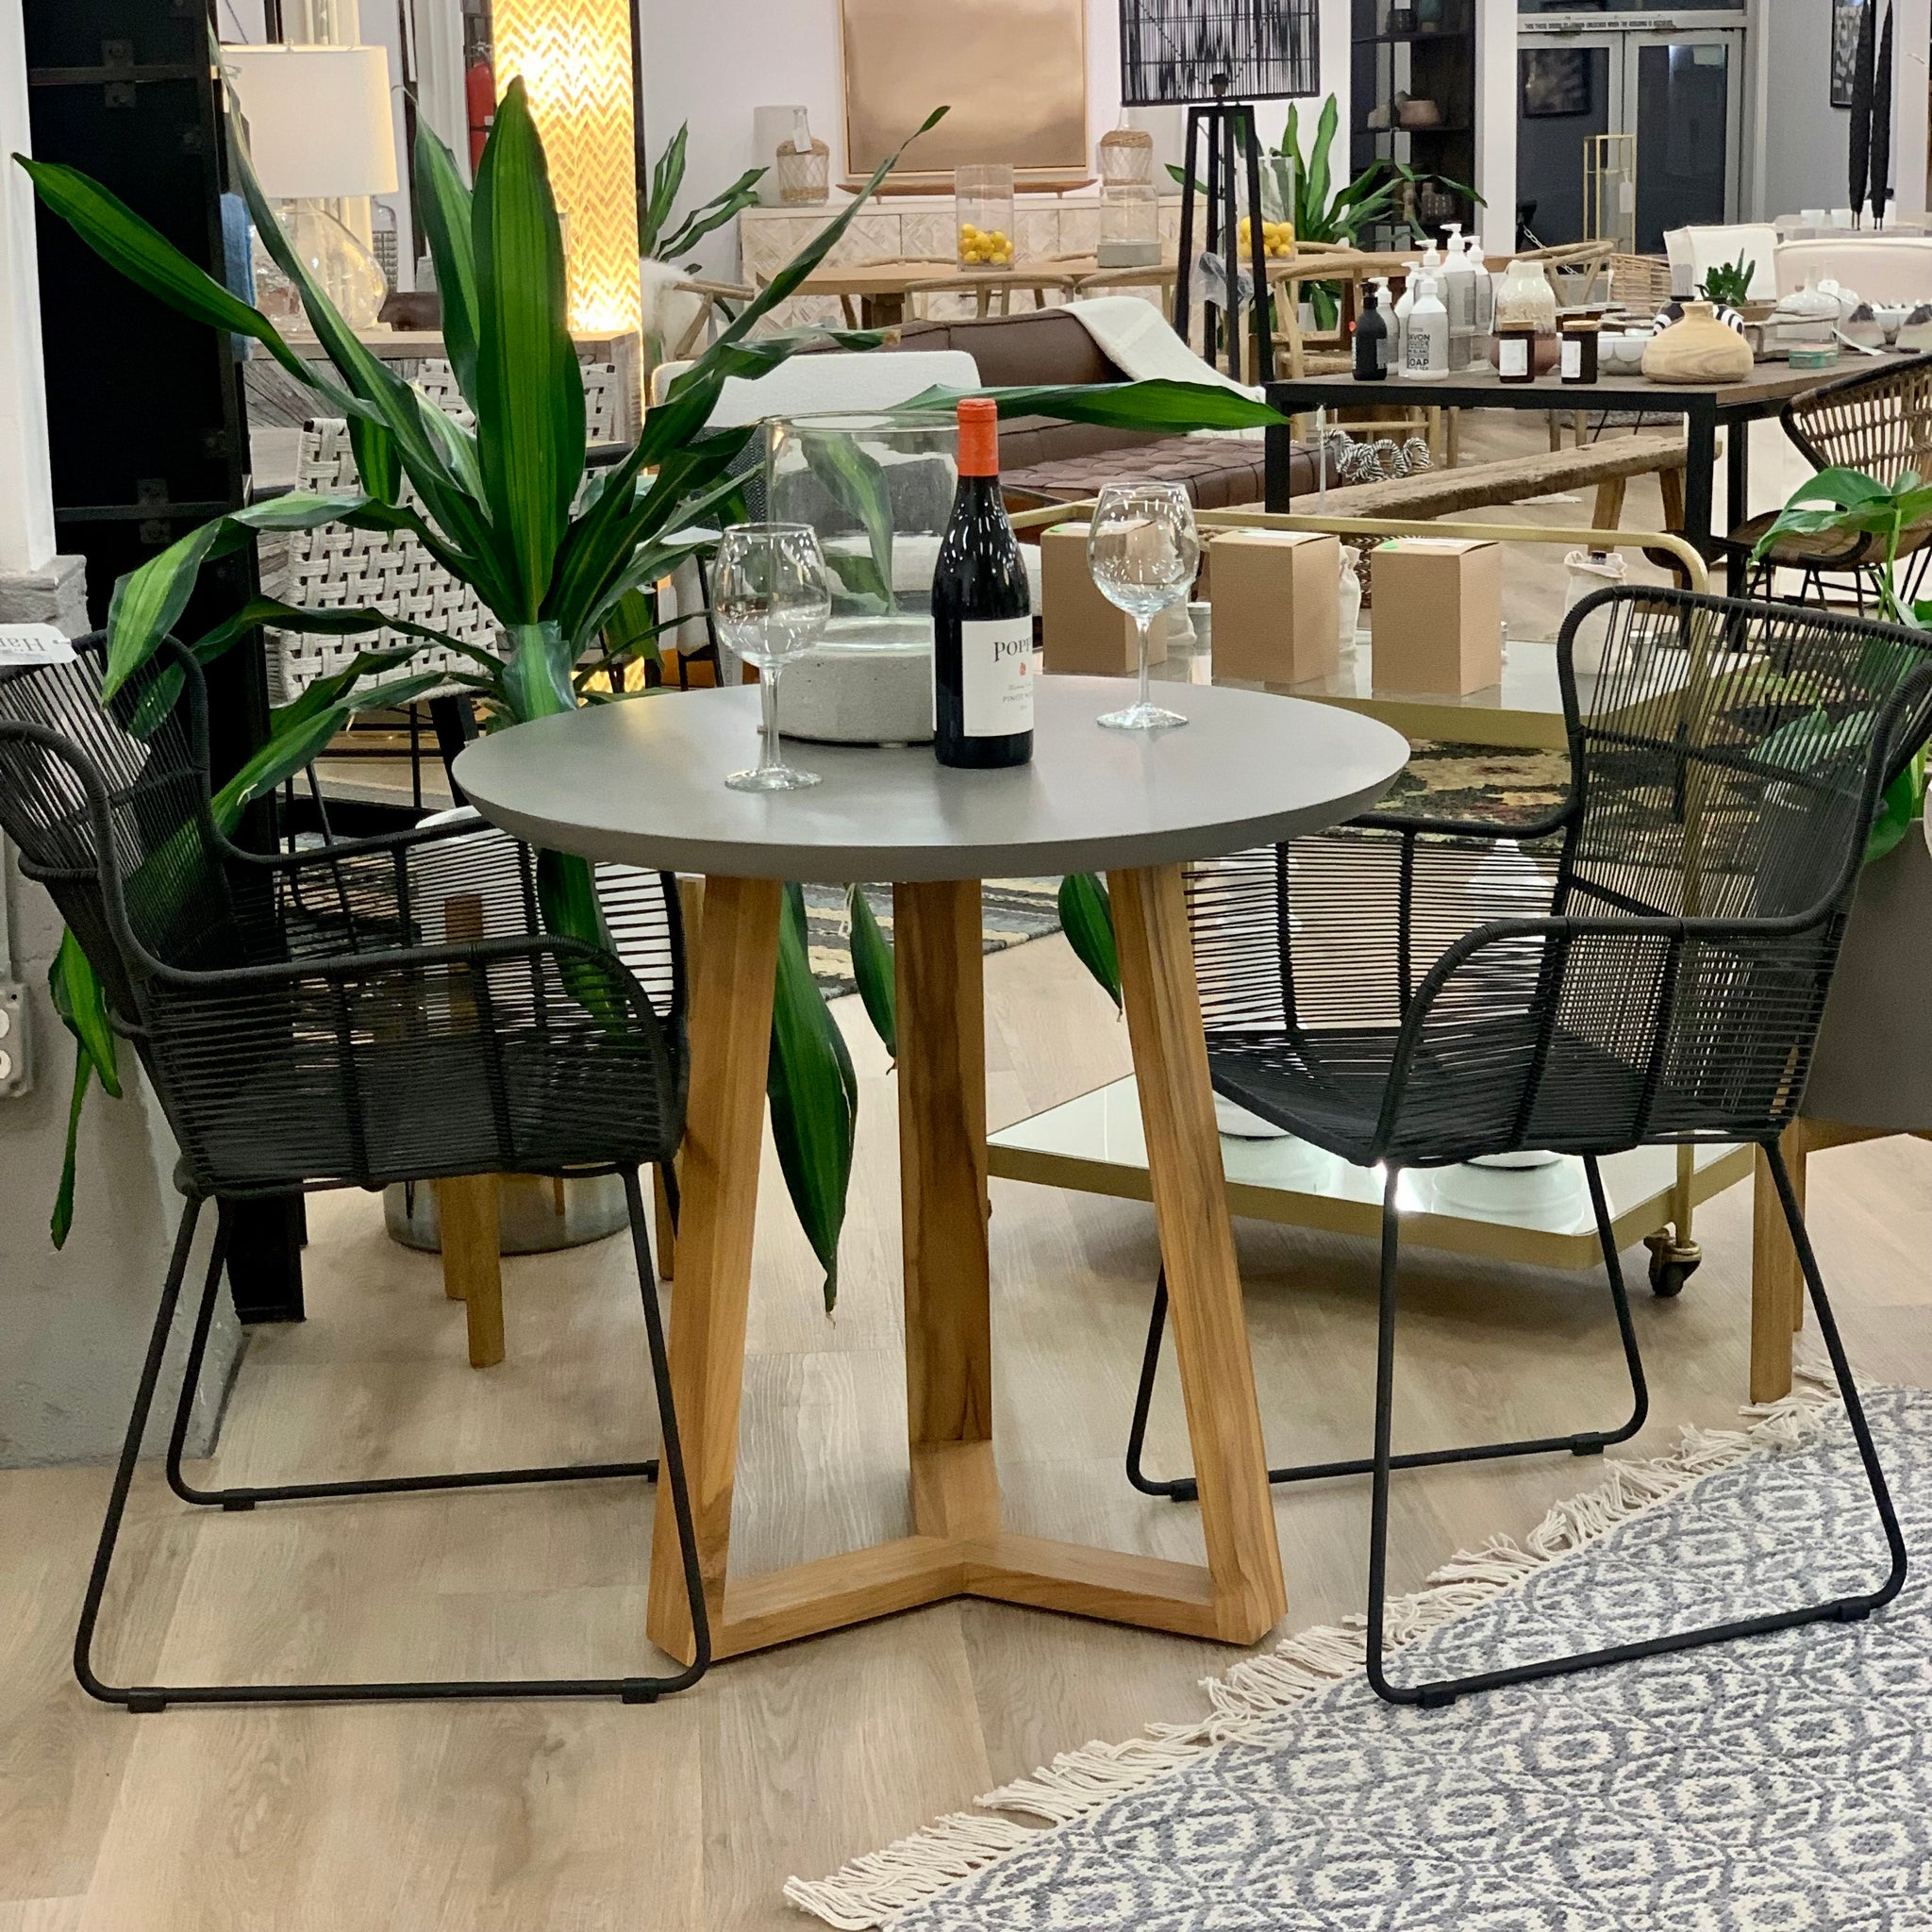 Bistro table indoor/outdoor (26011), dining chairs indoor/outdoor (30000)